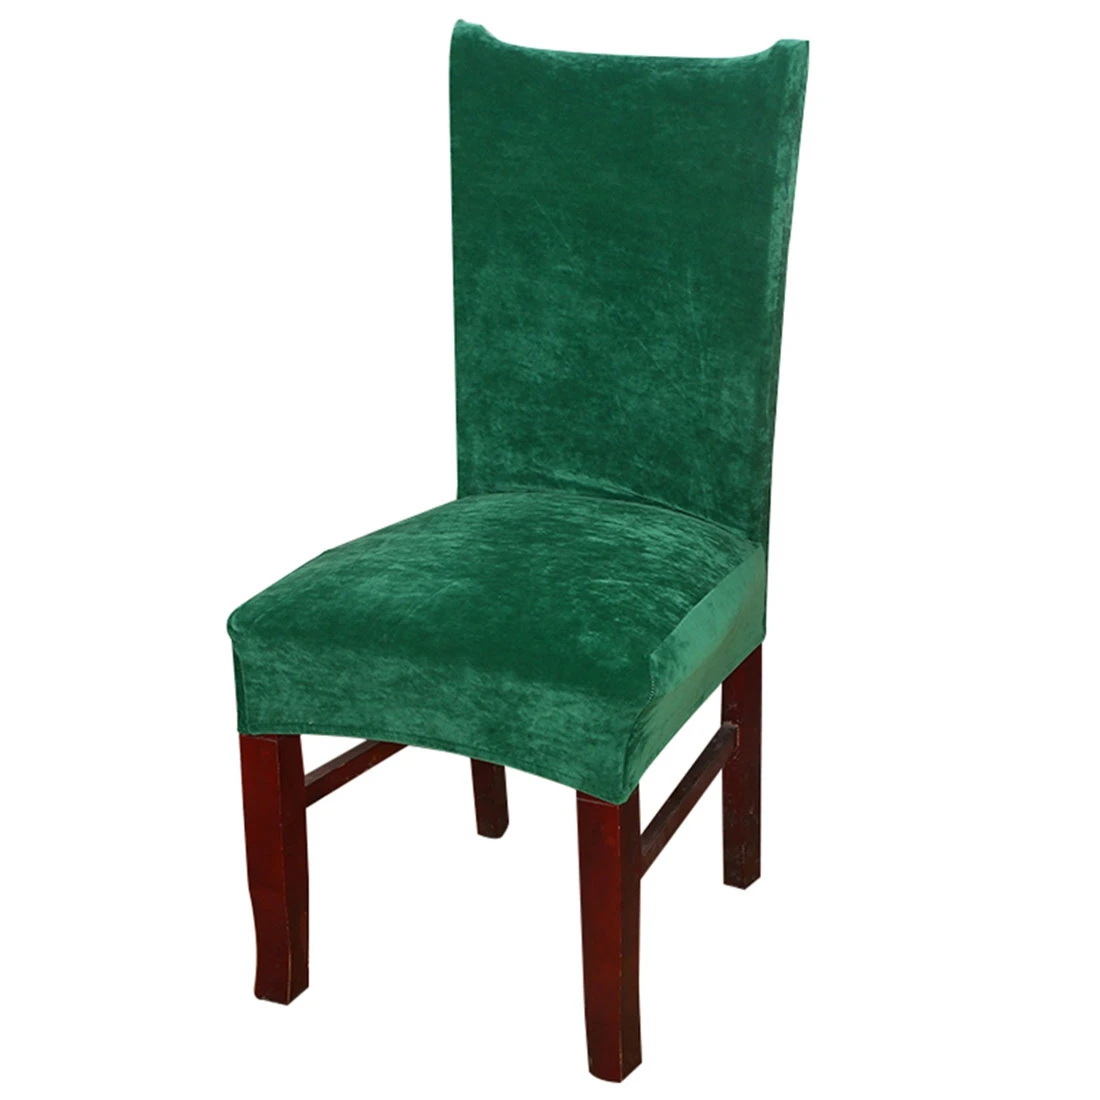 2 шт./лот чехлы на кресла стрейч для столовой протектор утолщенный съемный чехол для стула чехол для сиденья для дома Свадебные товары для стула - Цвет: Style 12